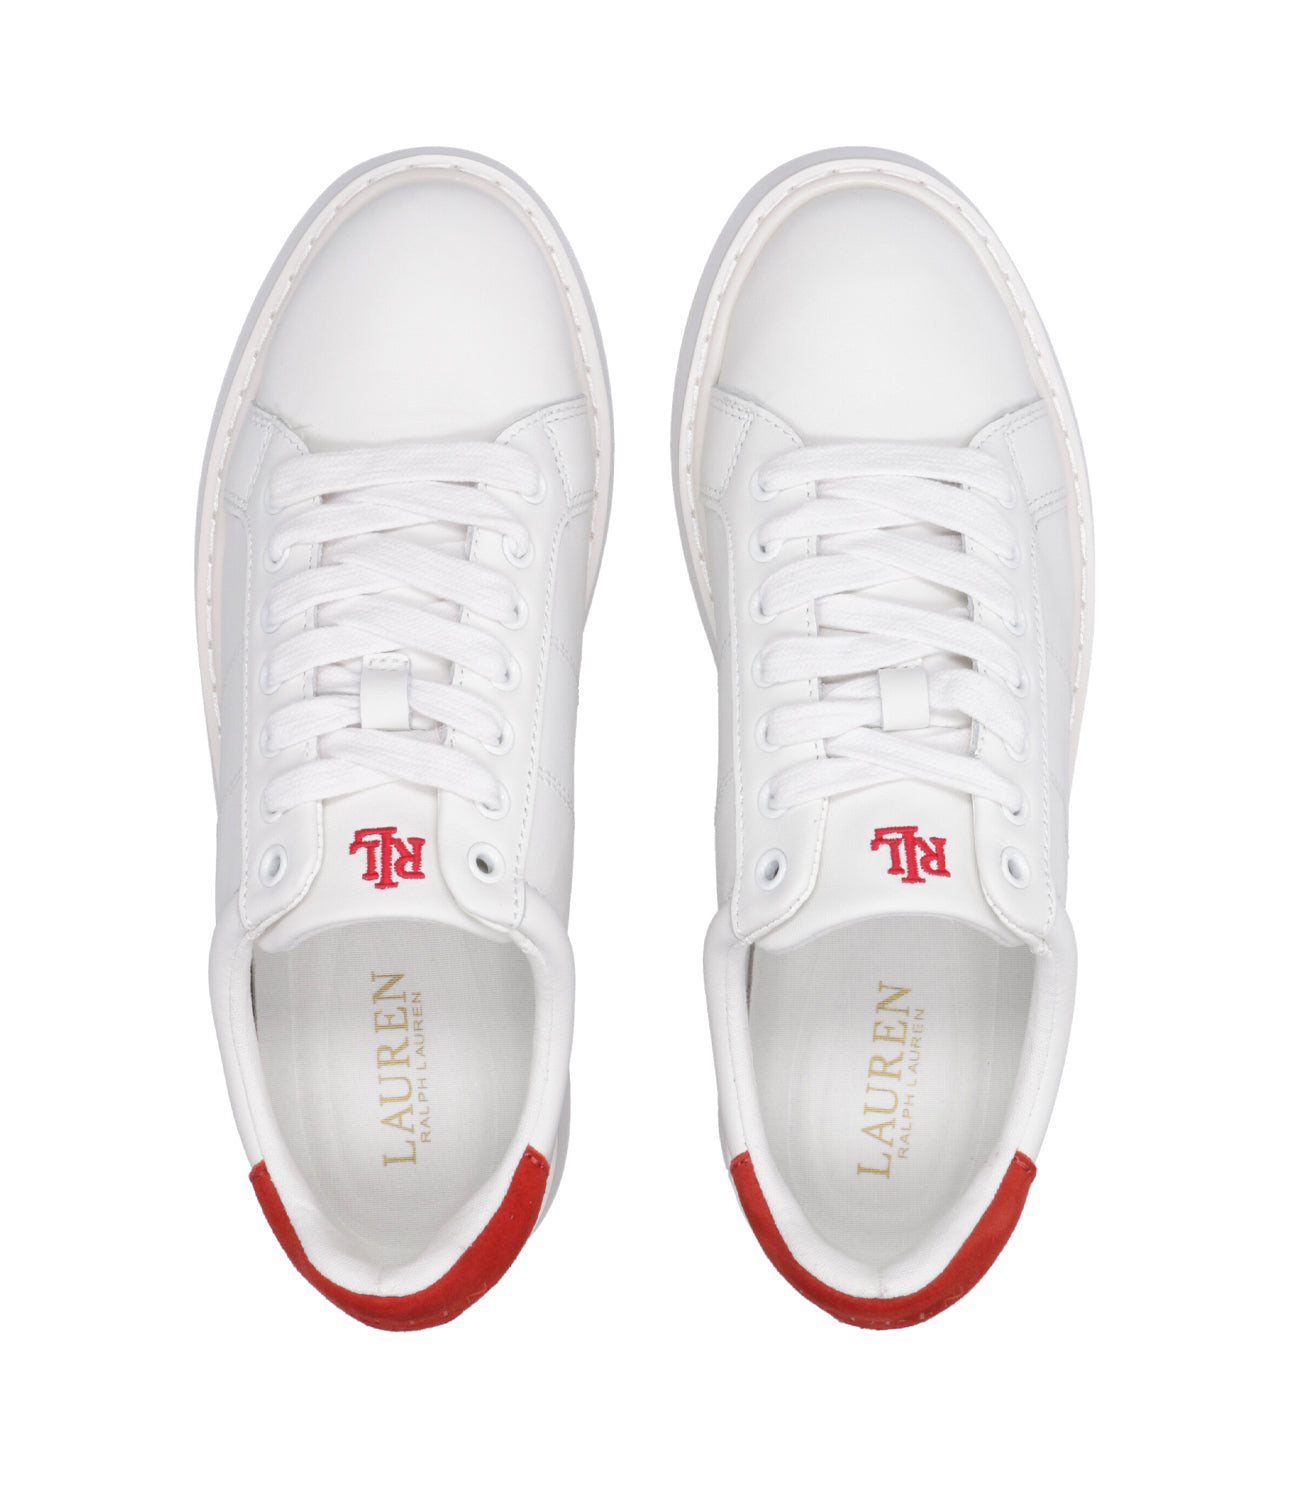 Lauren Ralph Lauren | Angeline Sneakers White and Red